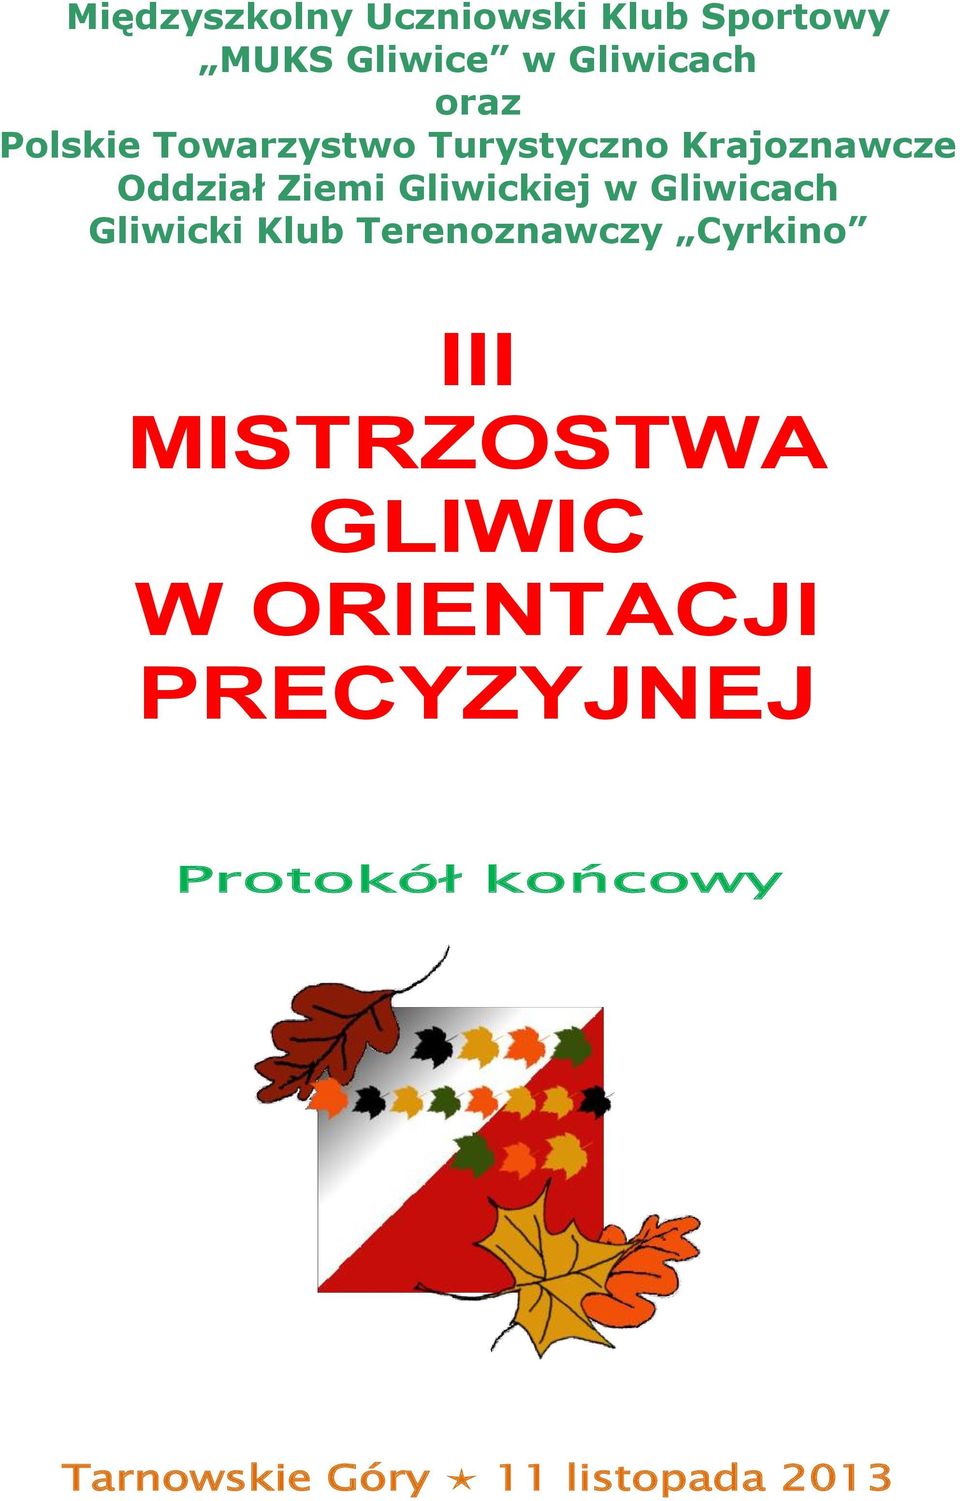 Gliwicach Gliwicki Klub Terenoznawczy Cyrkino III MISTRZOSTWA GLIWIC W